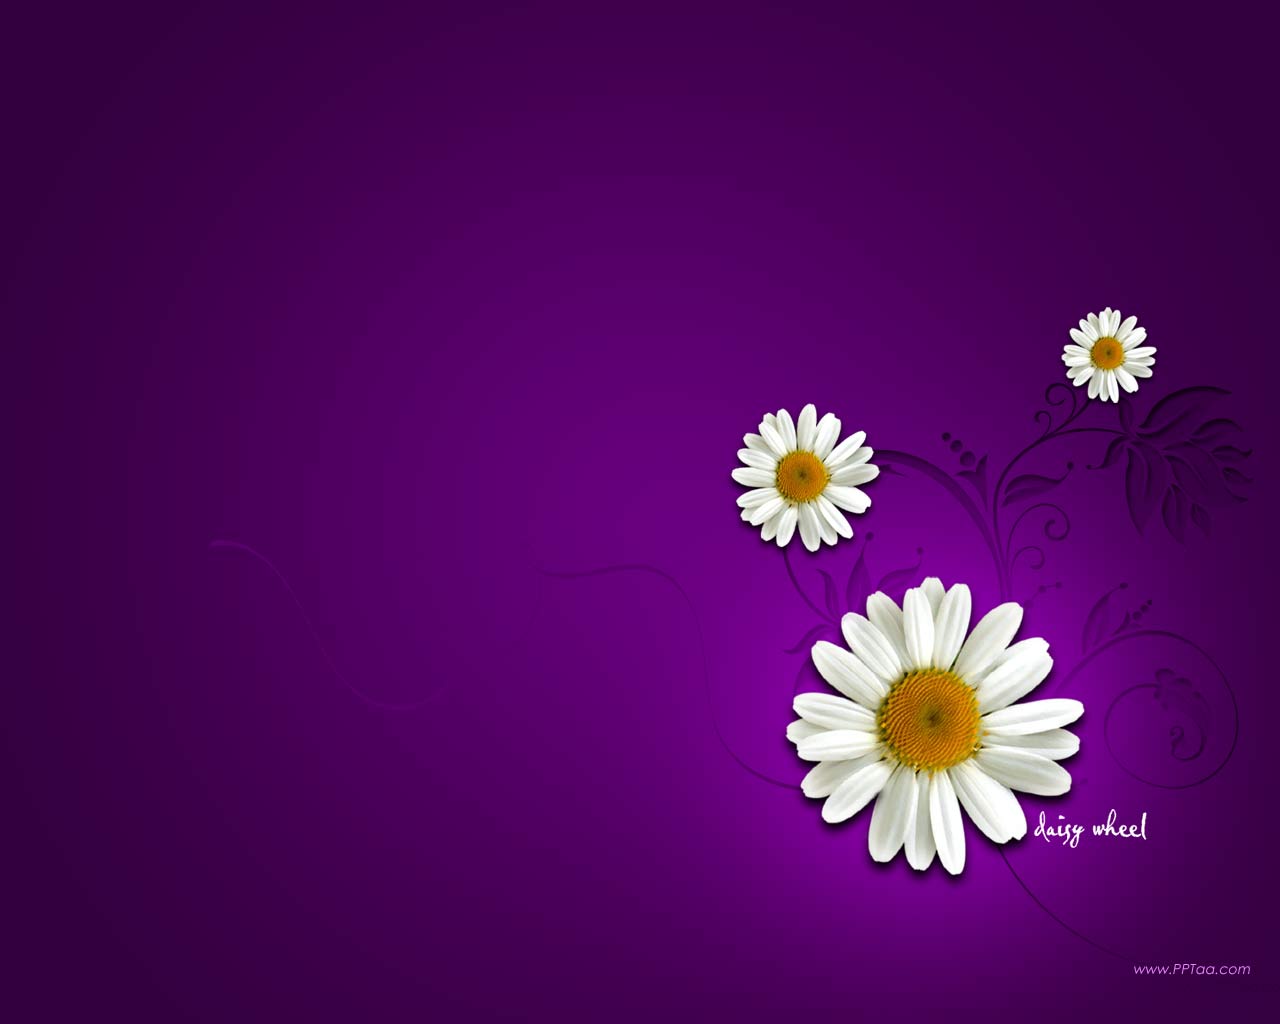 Free download daisy flower wallpaper desktopdaisy flower desktop